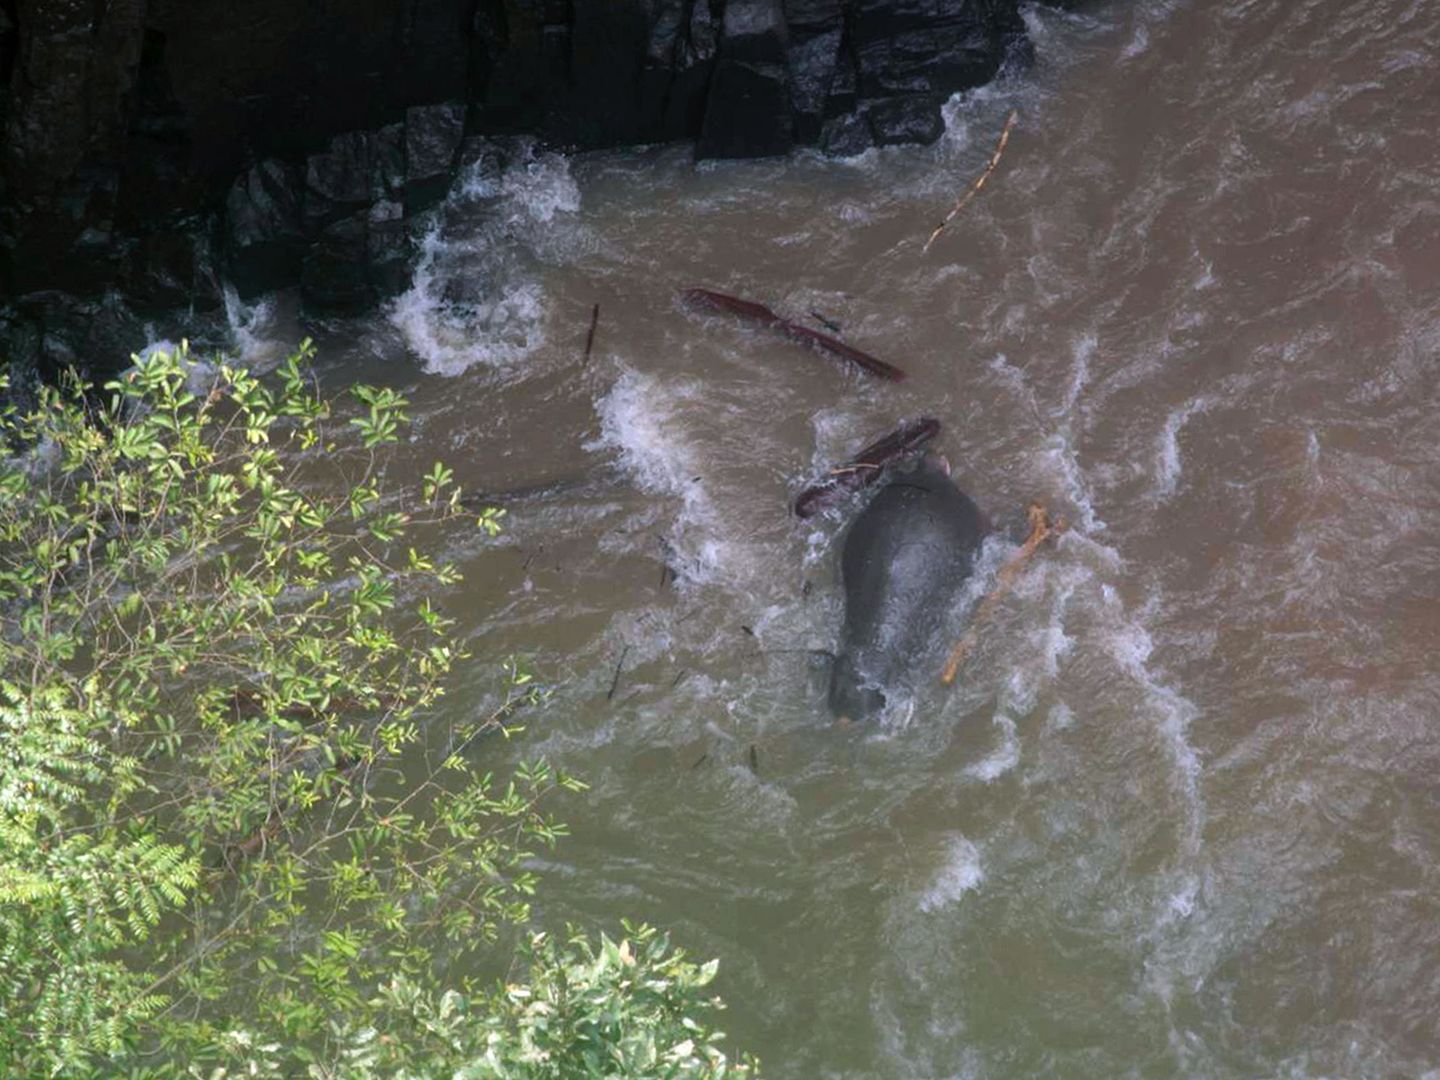 Los elefantes murieron ahogados y deben sacar sus cuerpos del agua para no contaminar el río